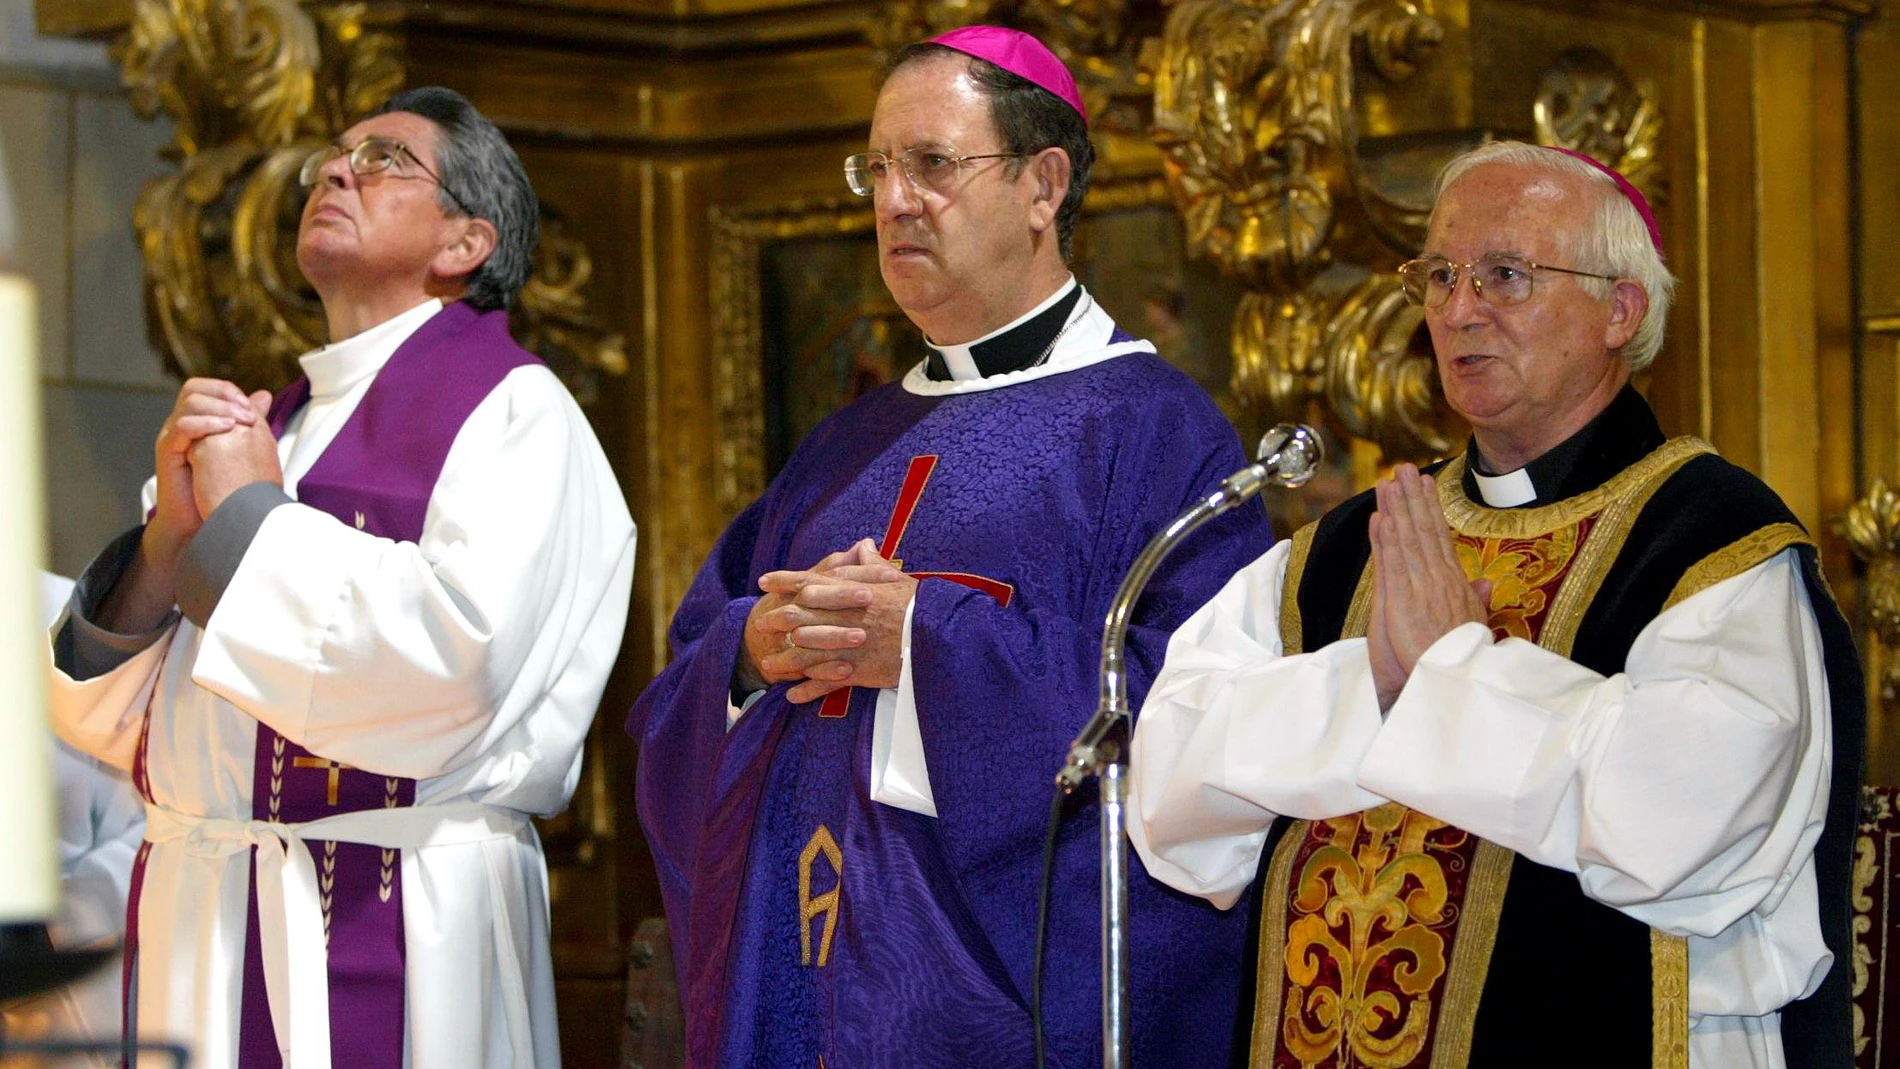 Rafael Palmero en una de sus celebraciones como obispo de Palencia